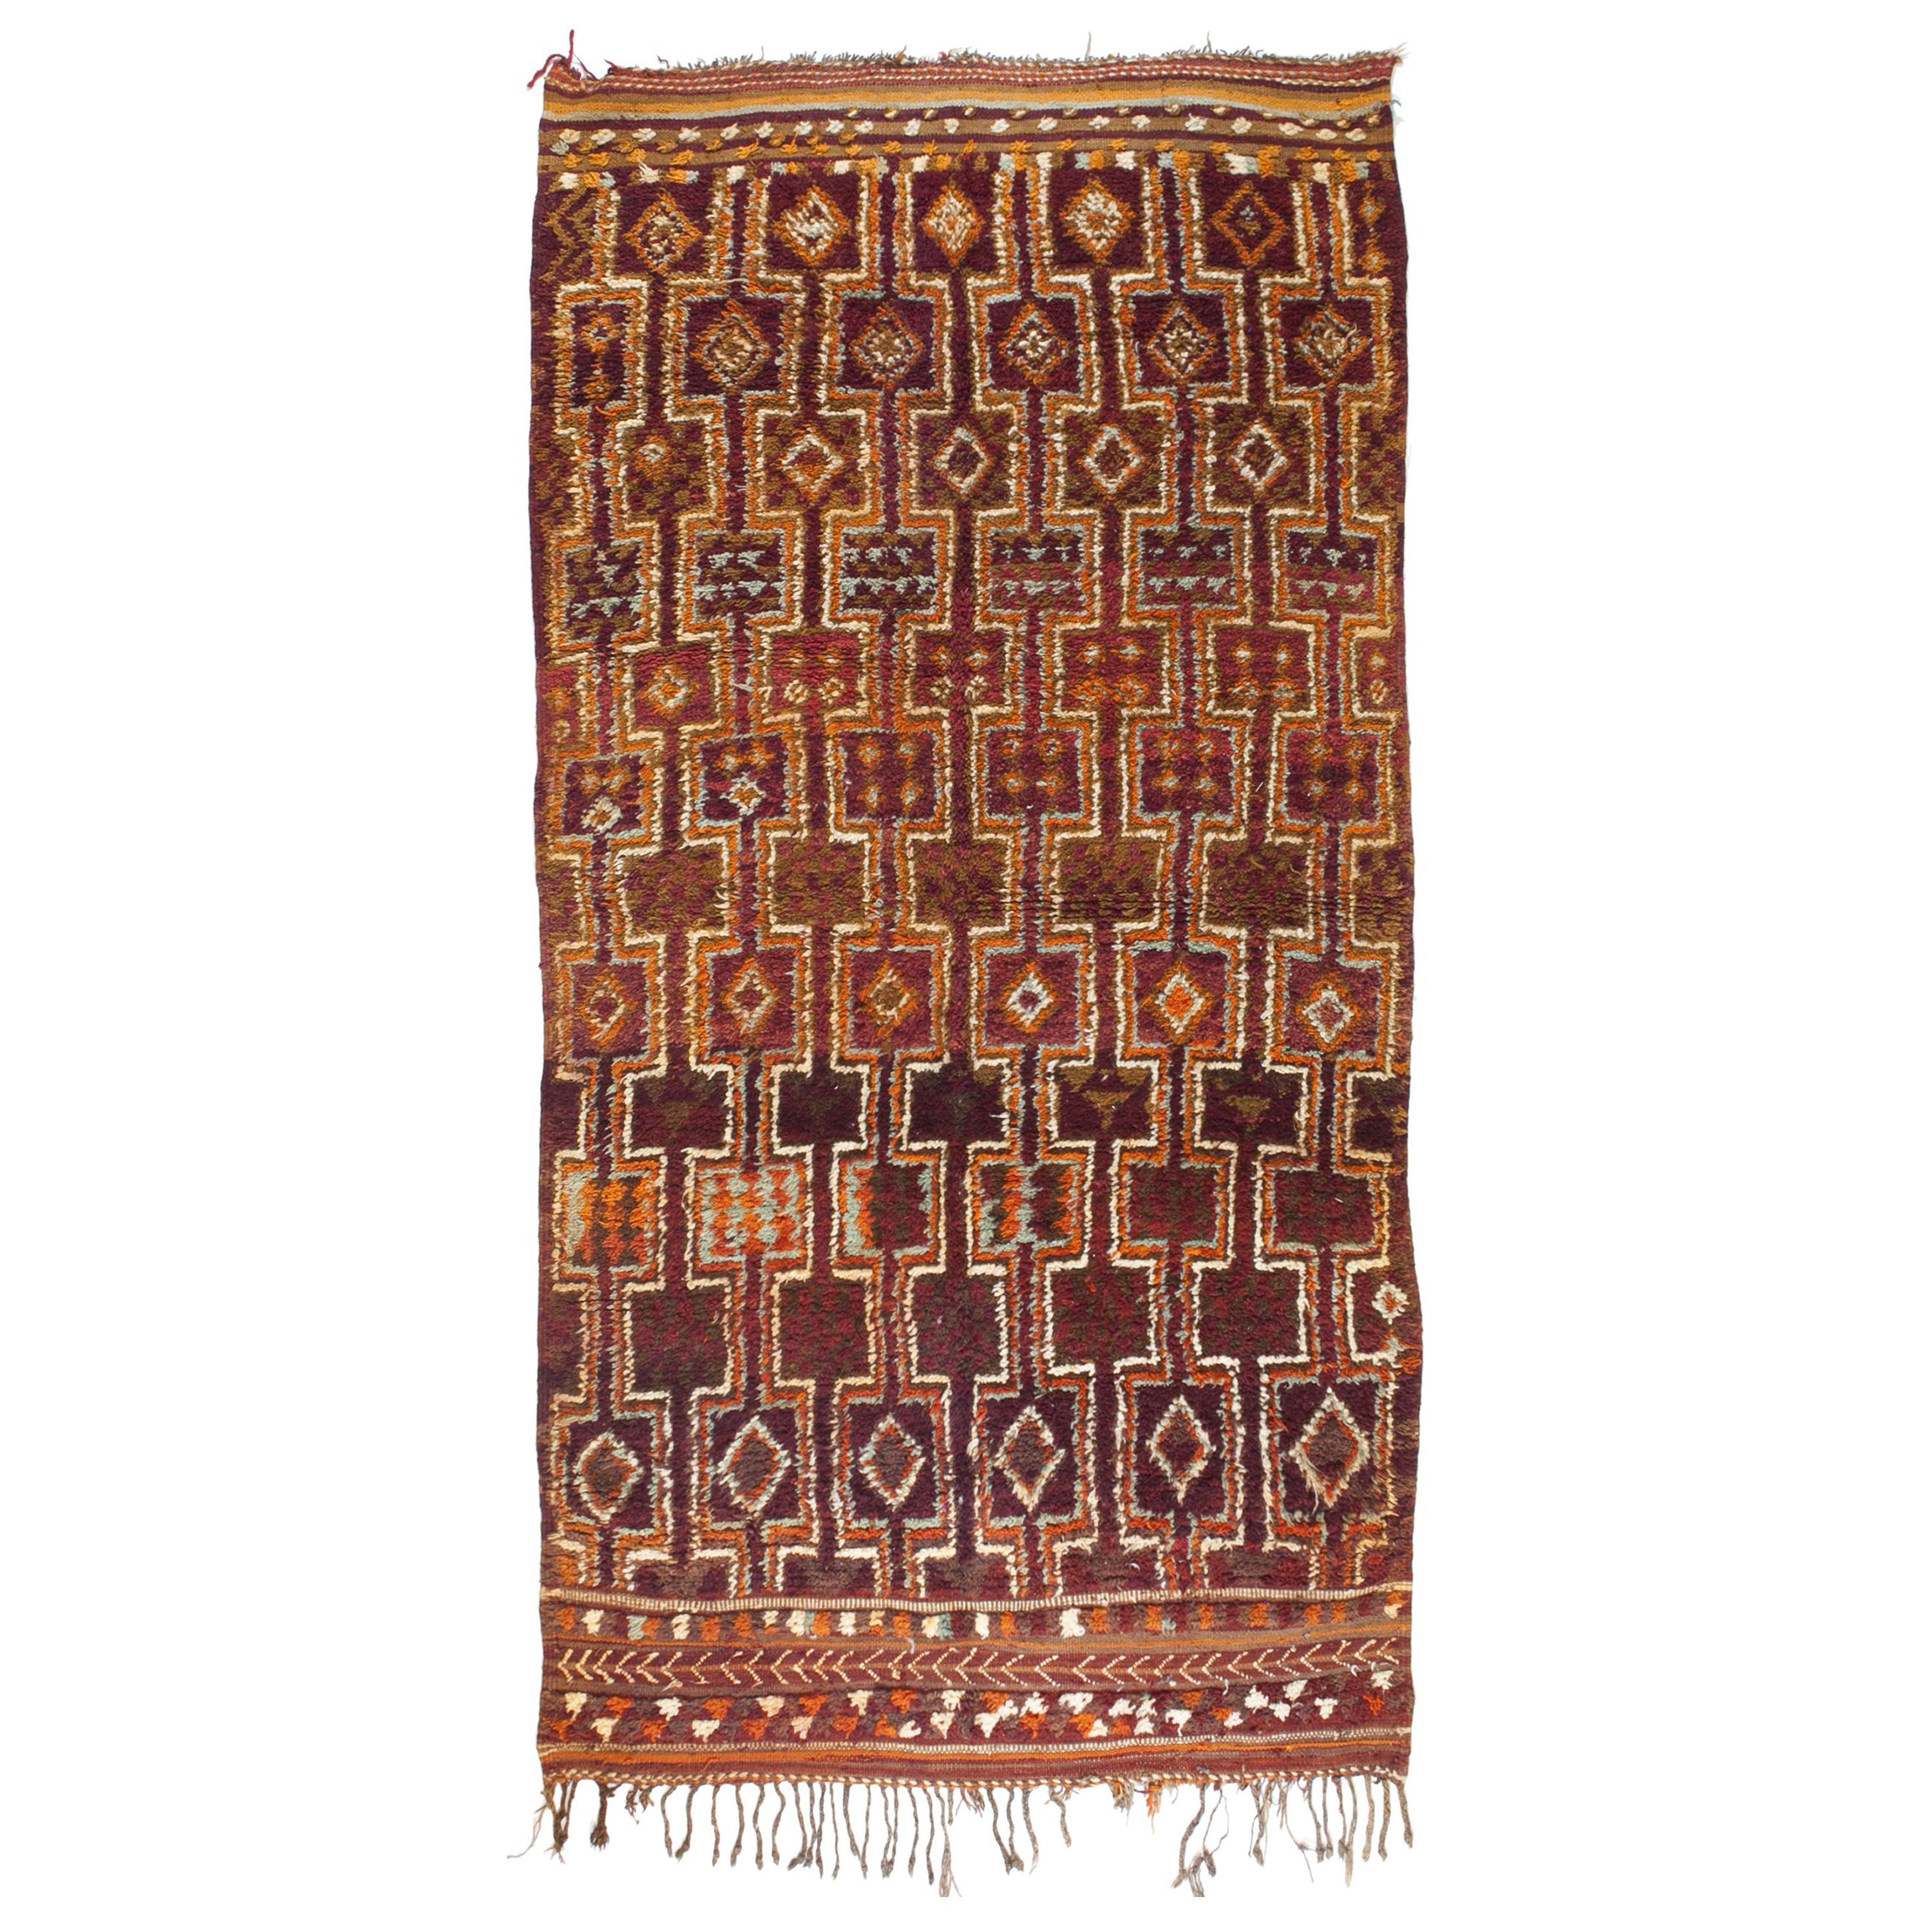 TAPPETO Talsent di Qualità Berbera, colorato, fatto a mano, in lana, in stock For Sale